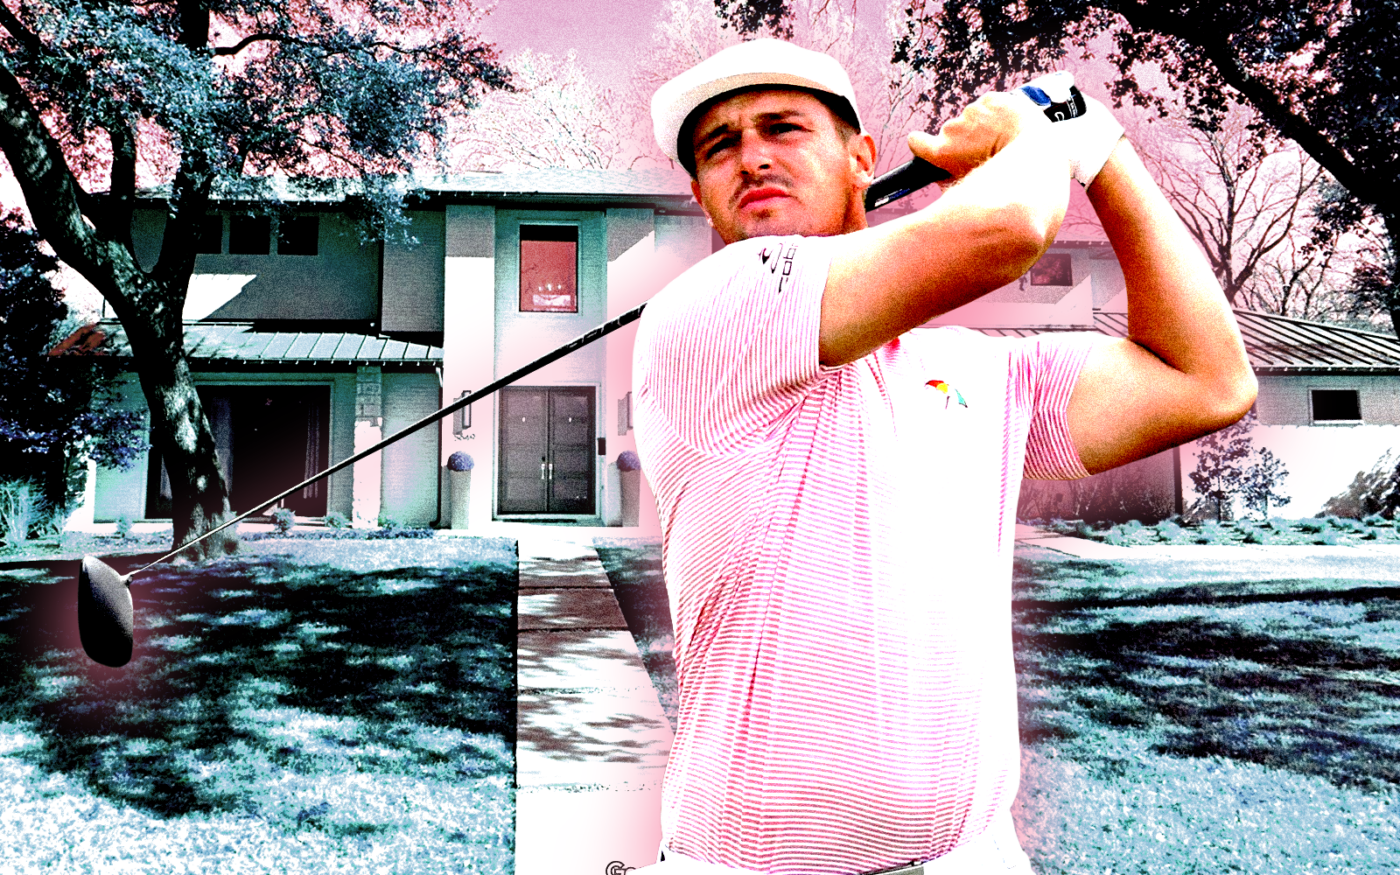 Golfer Bryson DeChambeau Asks $3M for Dallas Home